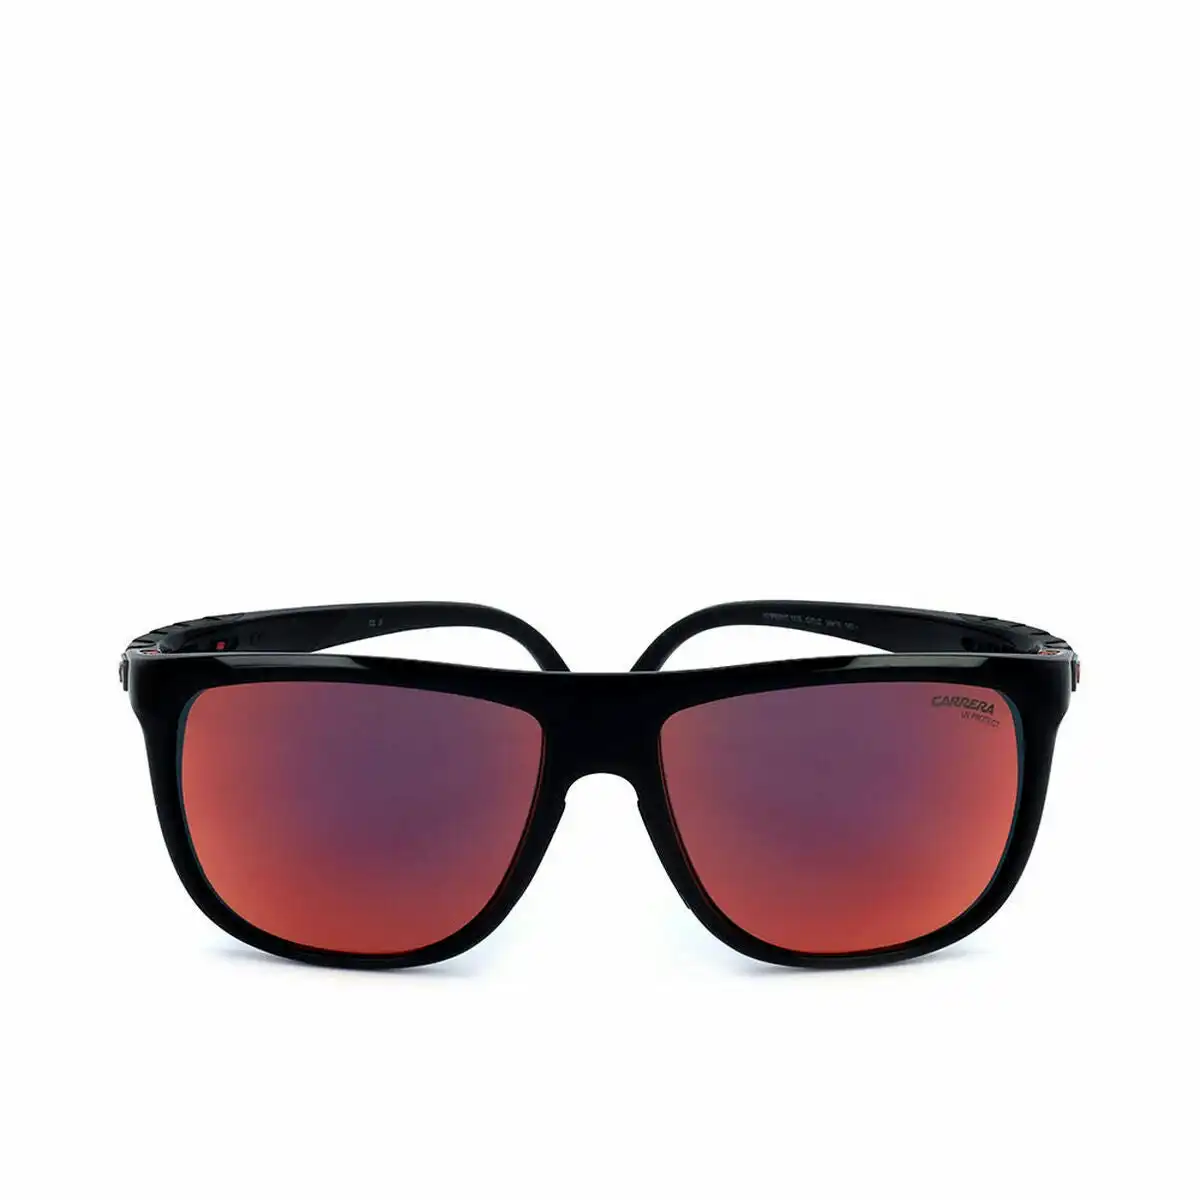 Men's Sunglasses Carrera Carrera Hyperfit S Oit